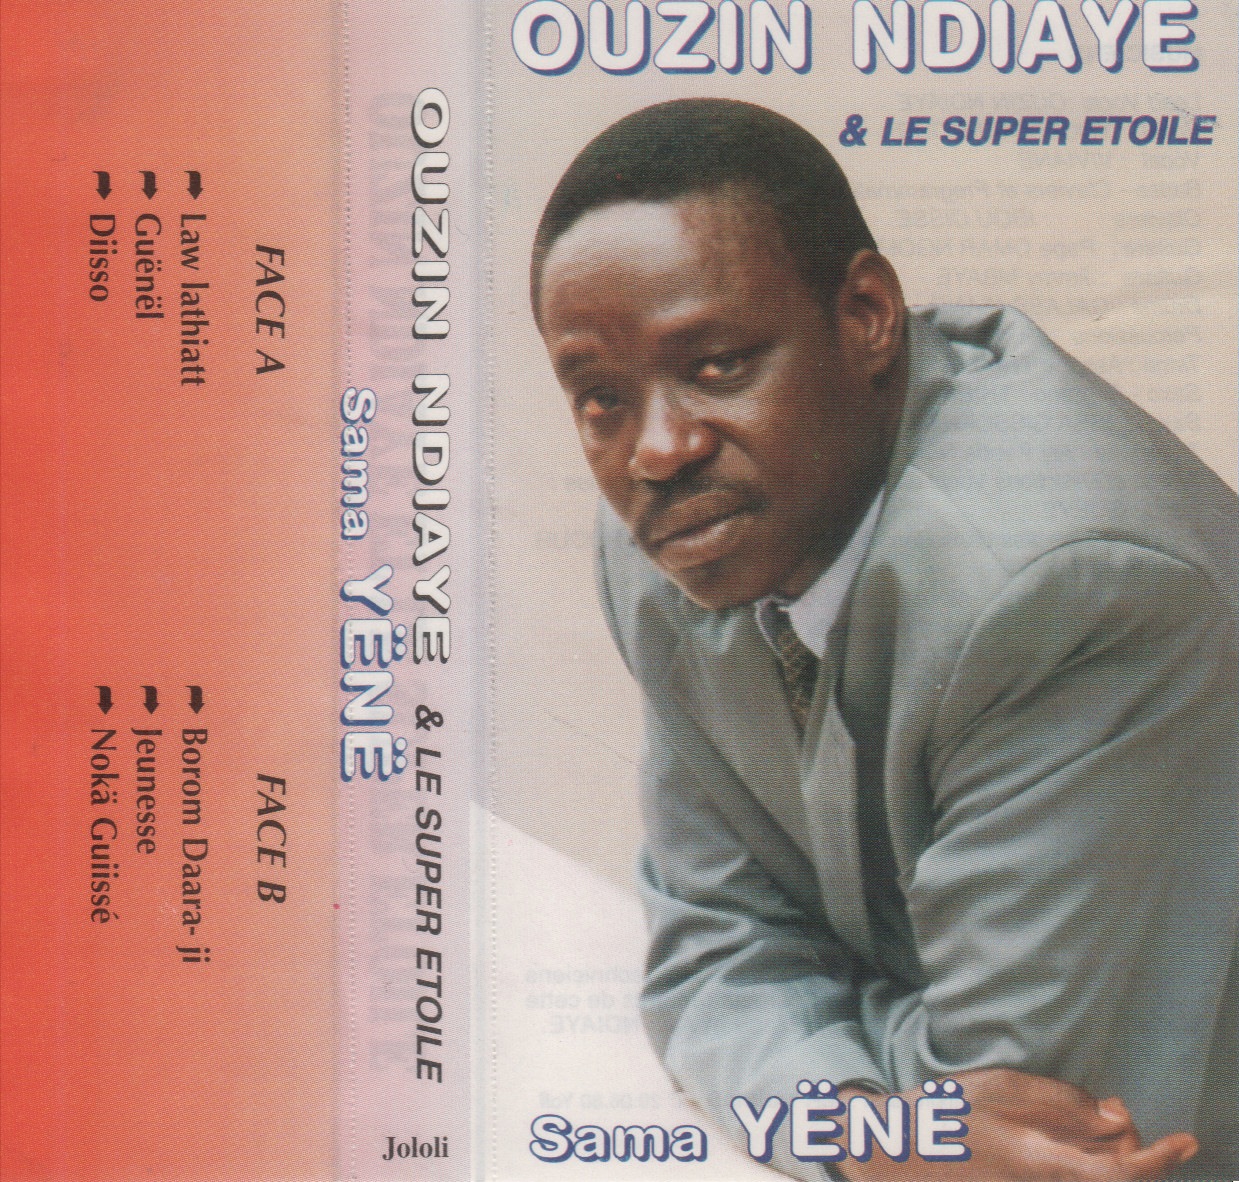 Ouzin Ndiaye & Le Super Etoile : Sama Yënë (1997) Cover+5